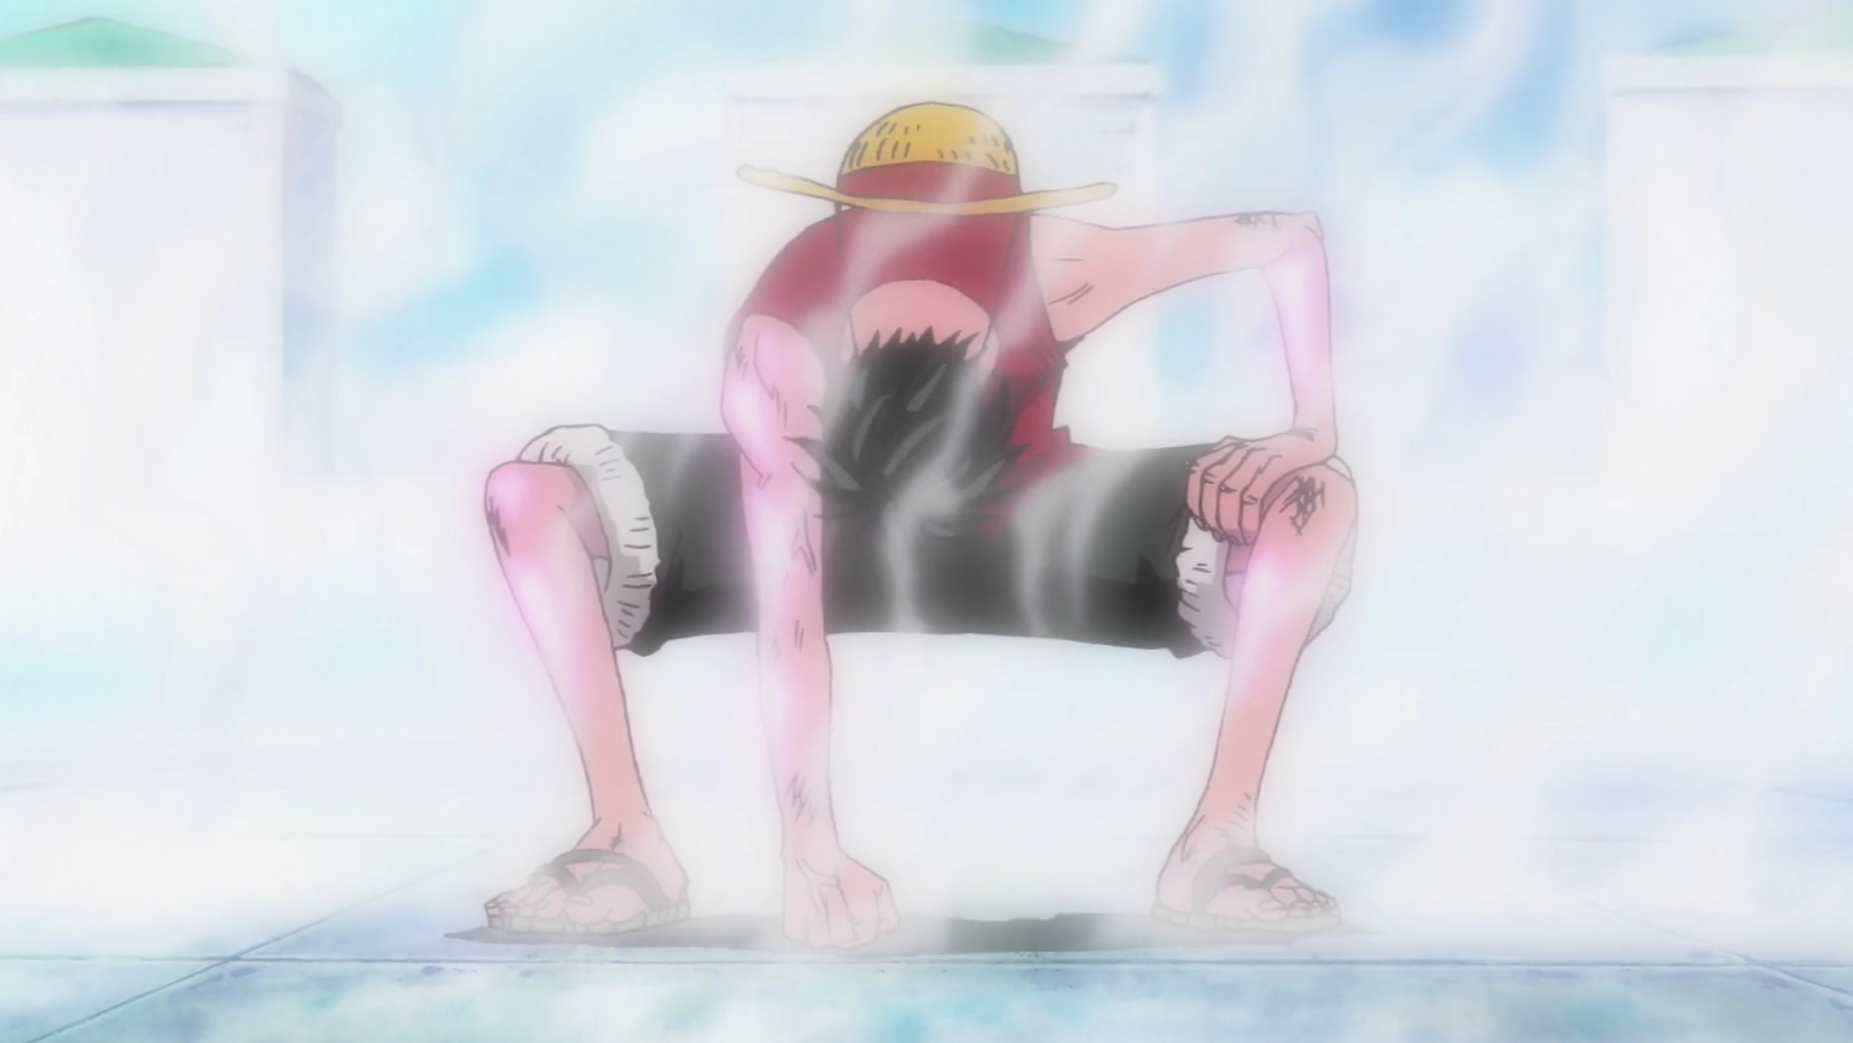 One Piece Enies Lobby Arc Gear 2 Luffy Pose